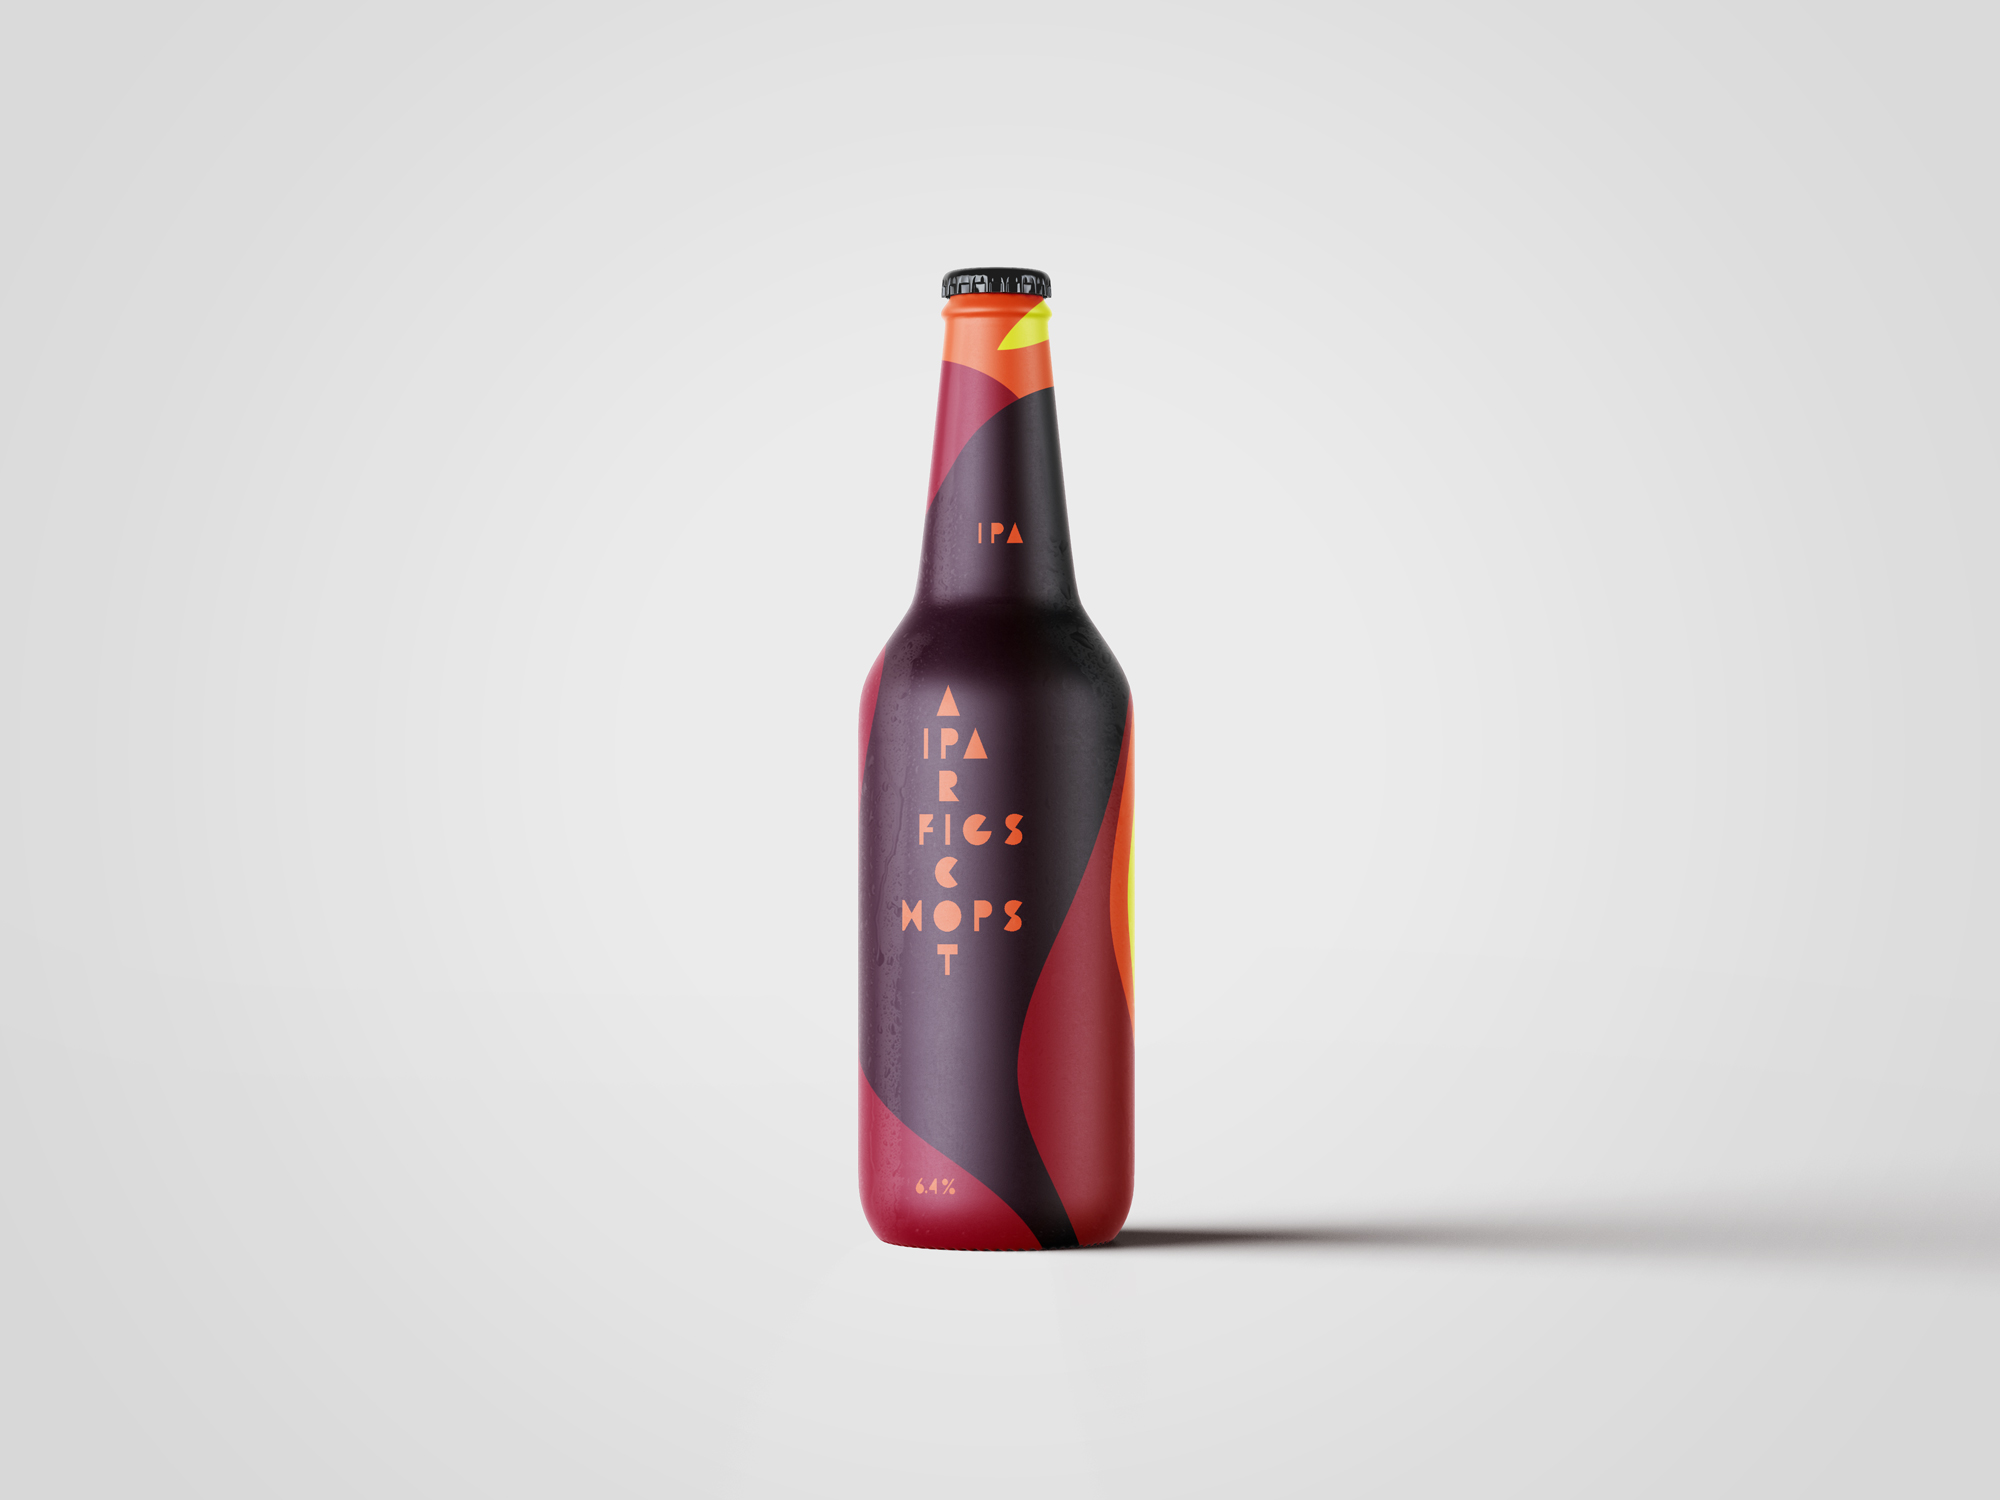 Fruit IPA beer bottle label design by Johan Wibrink